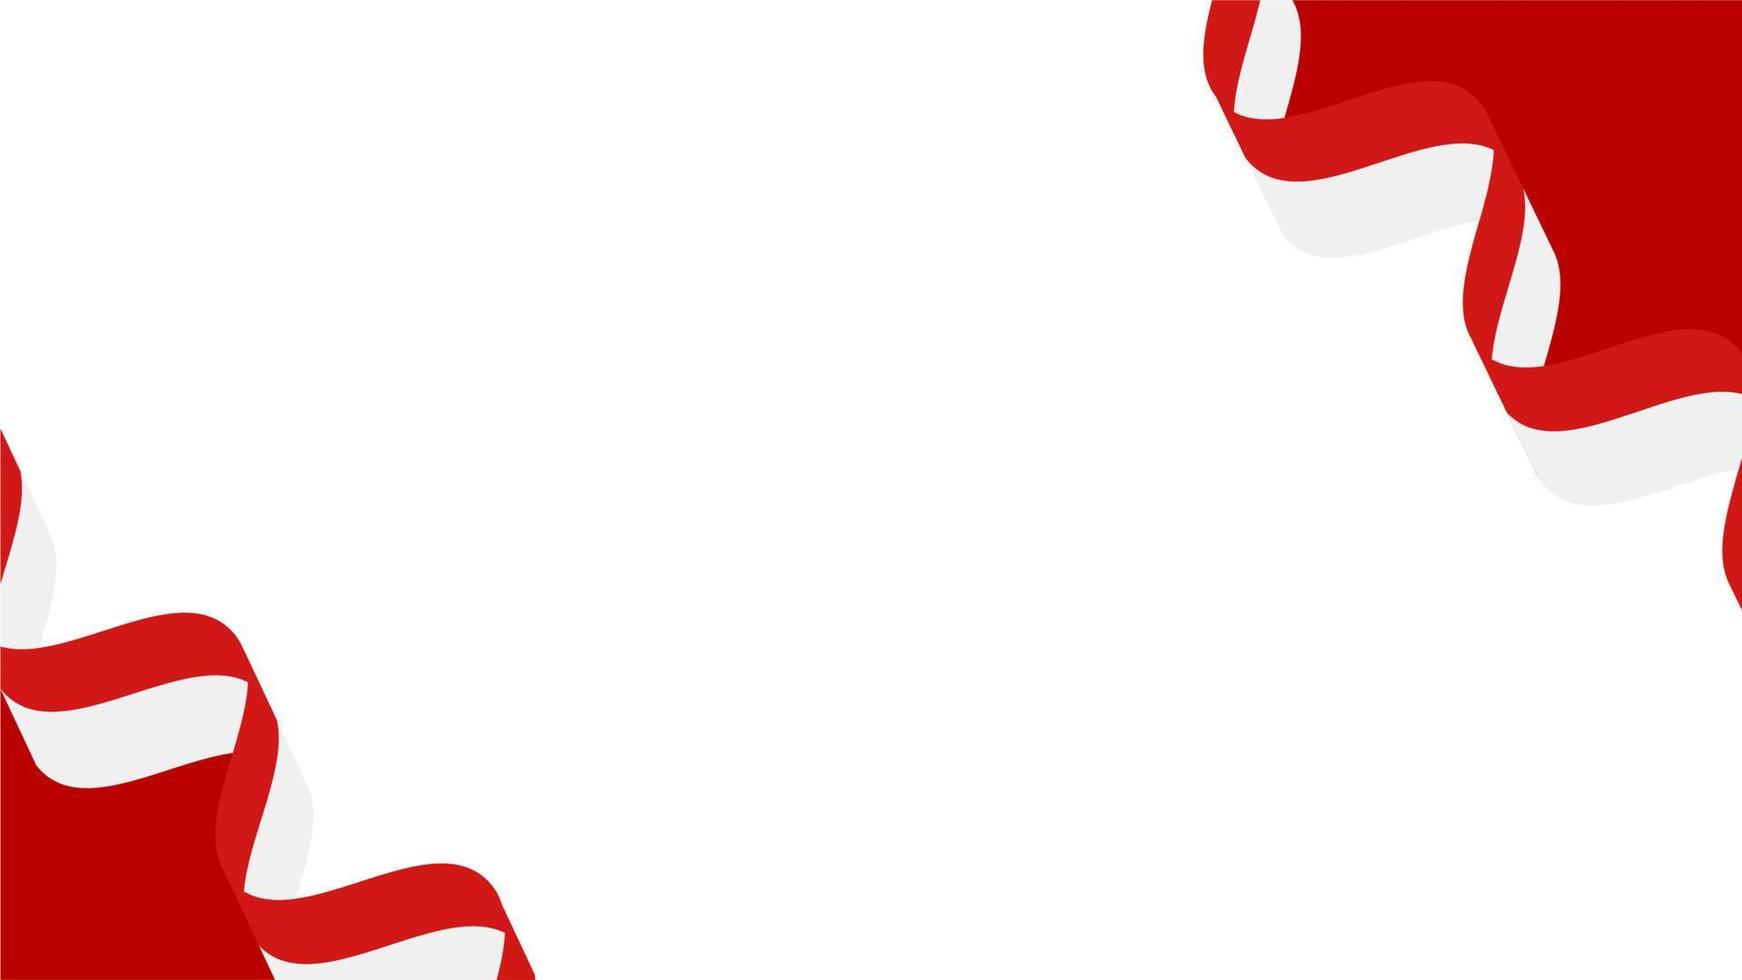 fond de modèle blanc rouge indonésie drapeau ruban illustration vectorielle vecteur